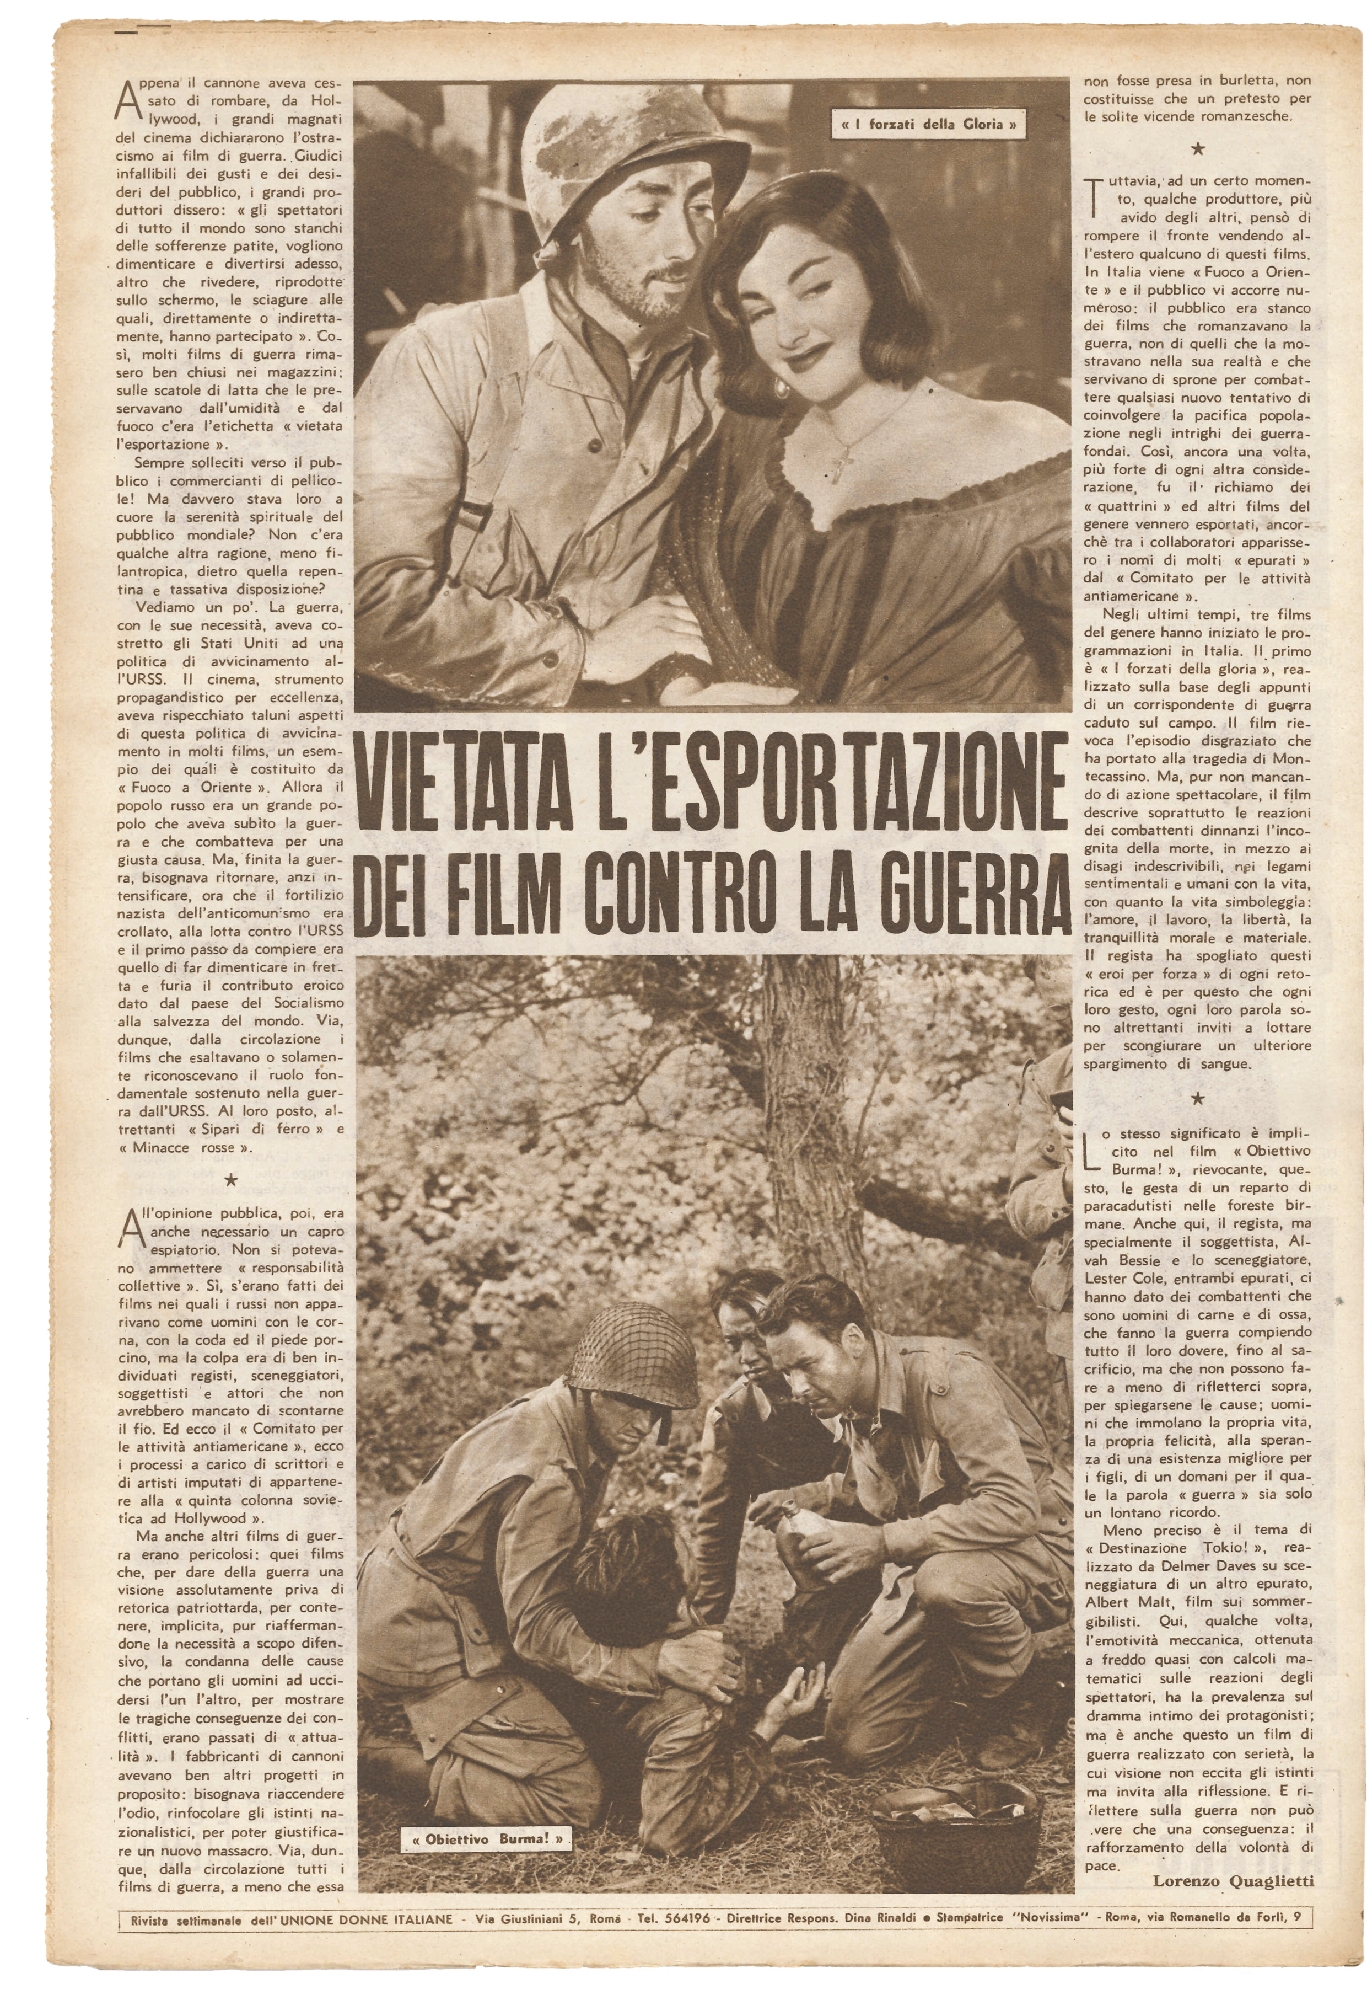 Foto: La gente di Popoli ha fame / Nelle fabbriche e nelle campagna italiane le donne combattono i padroni